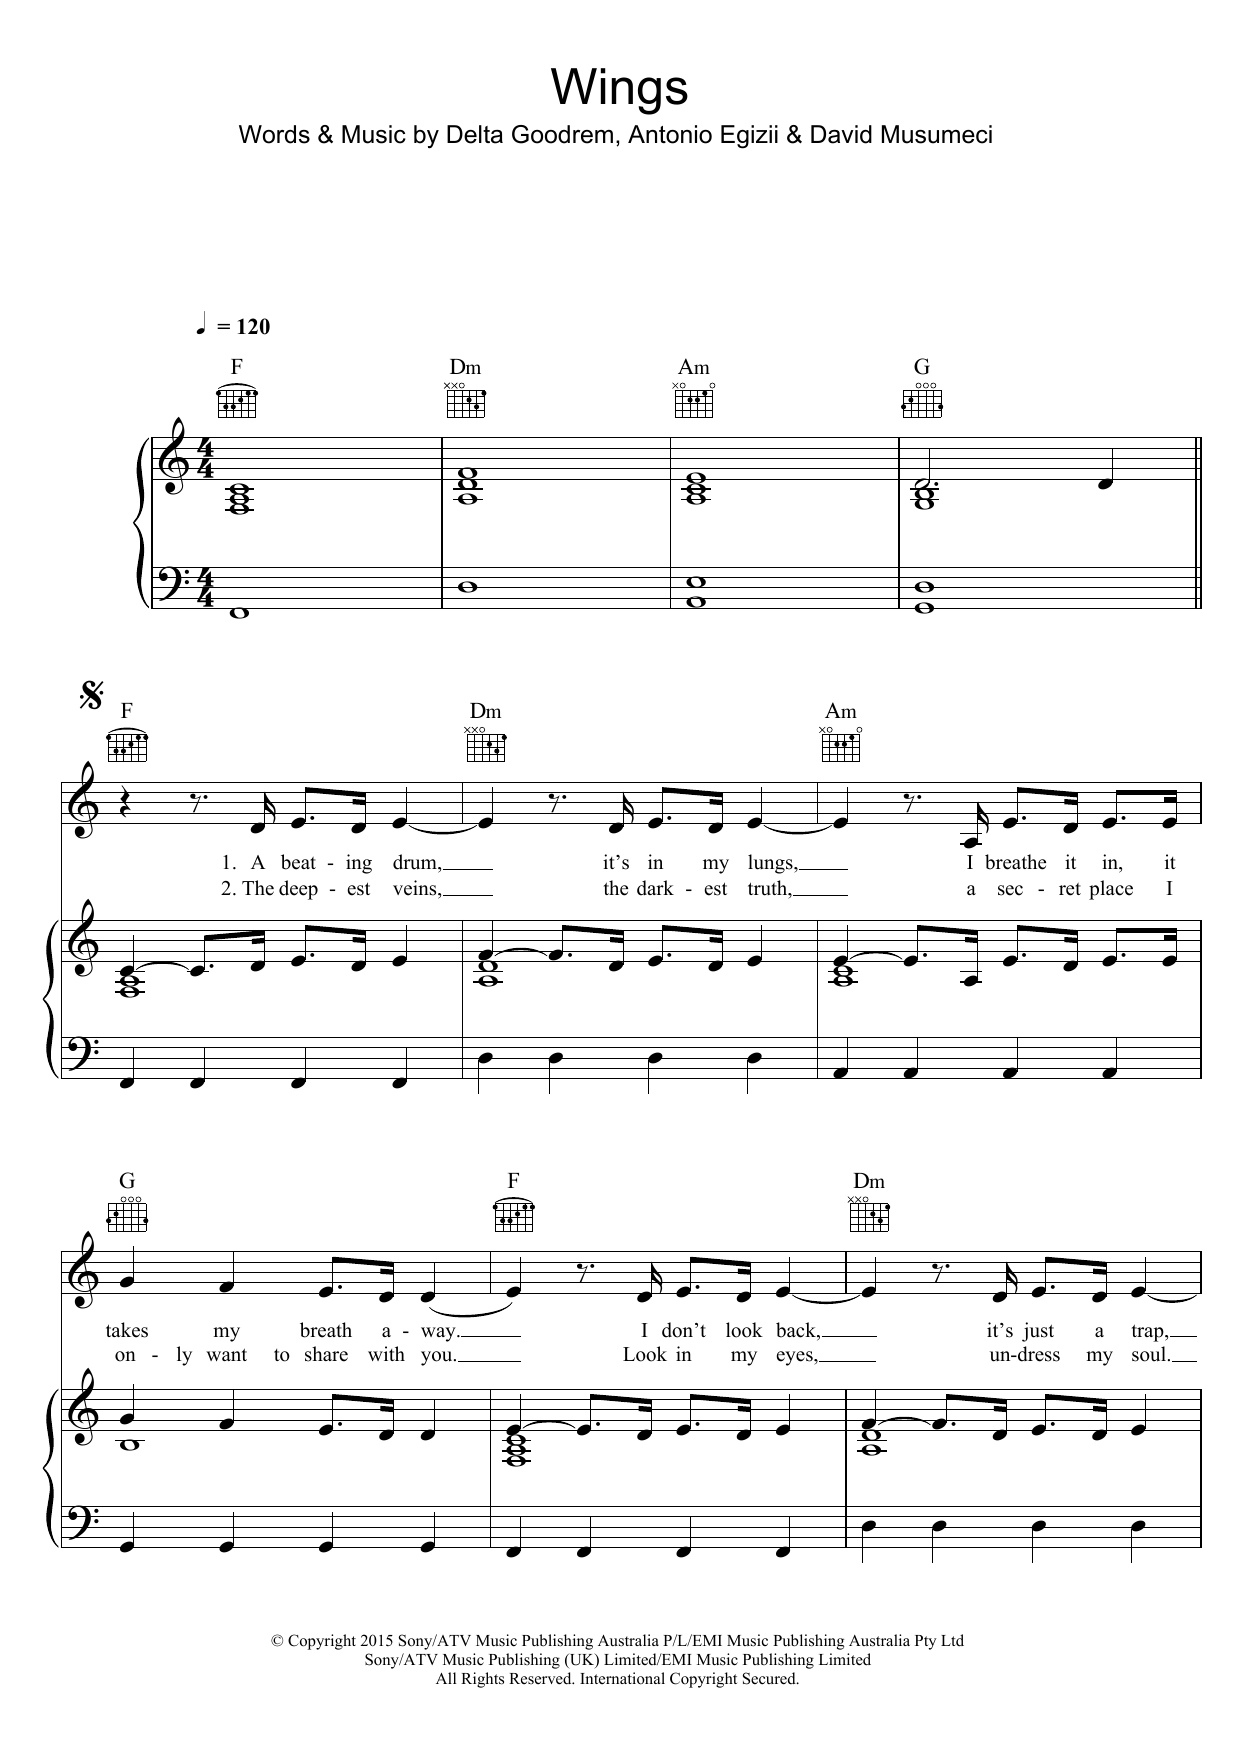 Delta Goodrem Wings Sheet Music Notes & Chords for Ukulele - Download or Print PDF